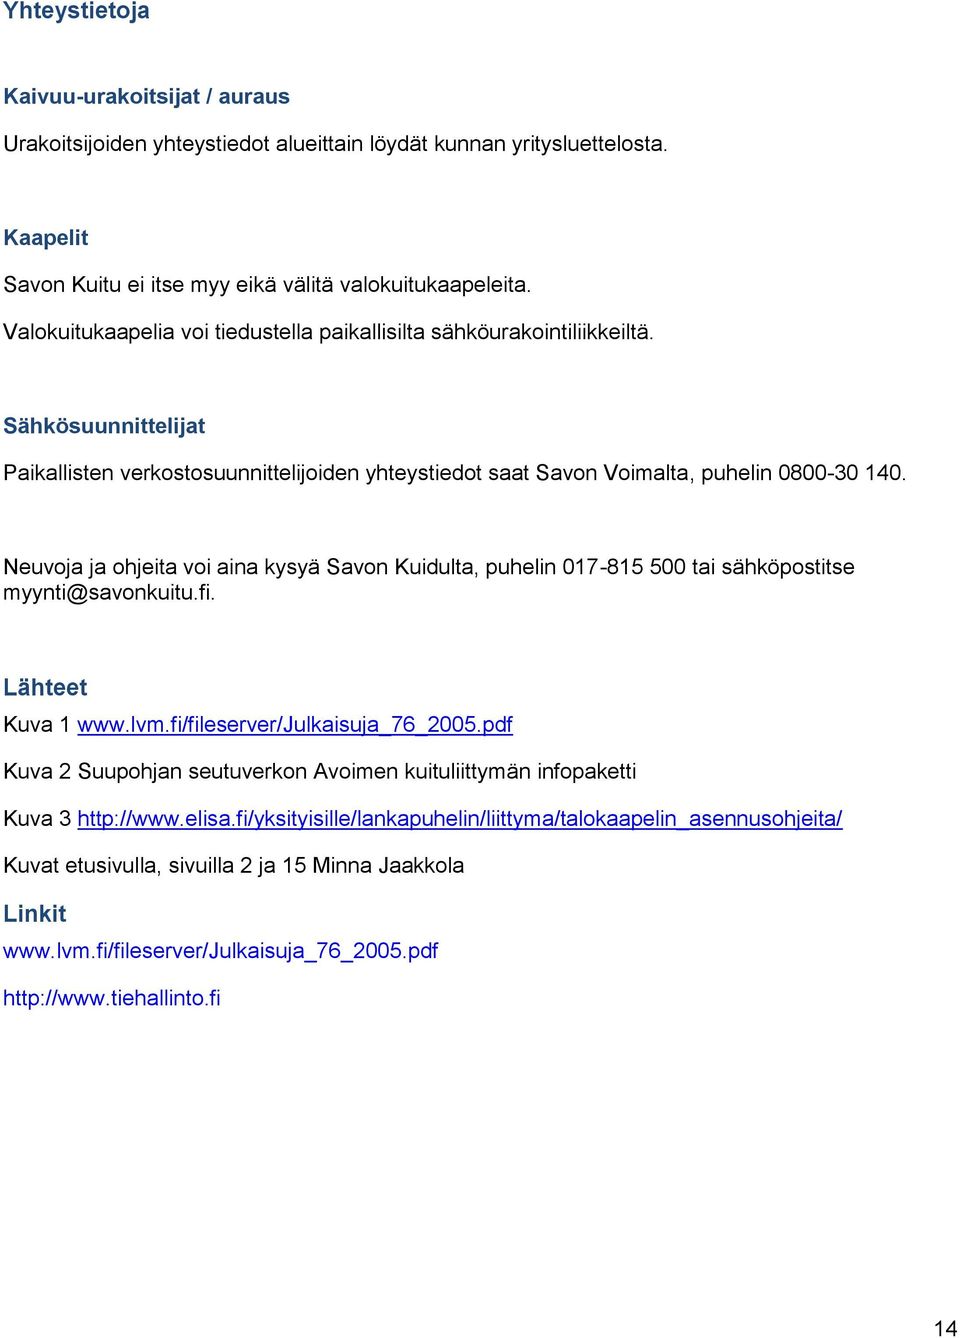 Neuvoja ja ohjeita voi aina kysyä Savon Kuidulta, puhelin 017-815 500 tai sähköpostitse myynti@savonkuitu.fi. Lähteet Kuva 1 www.lvm.fi/fileserver/julkaisuja_76_2005.